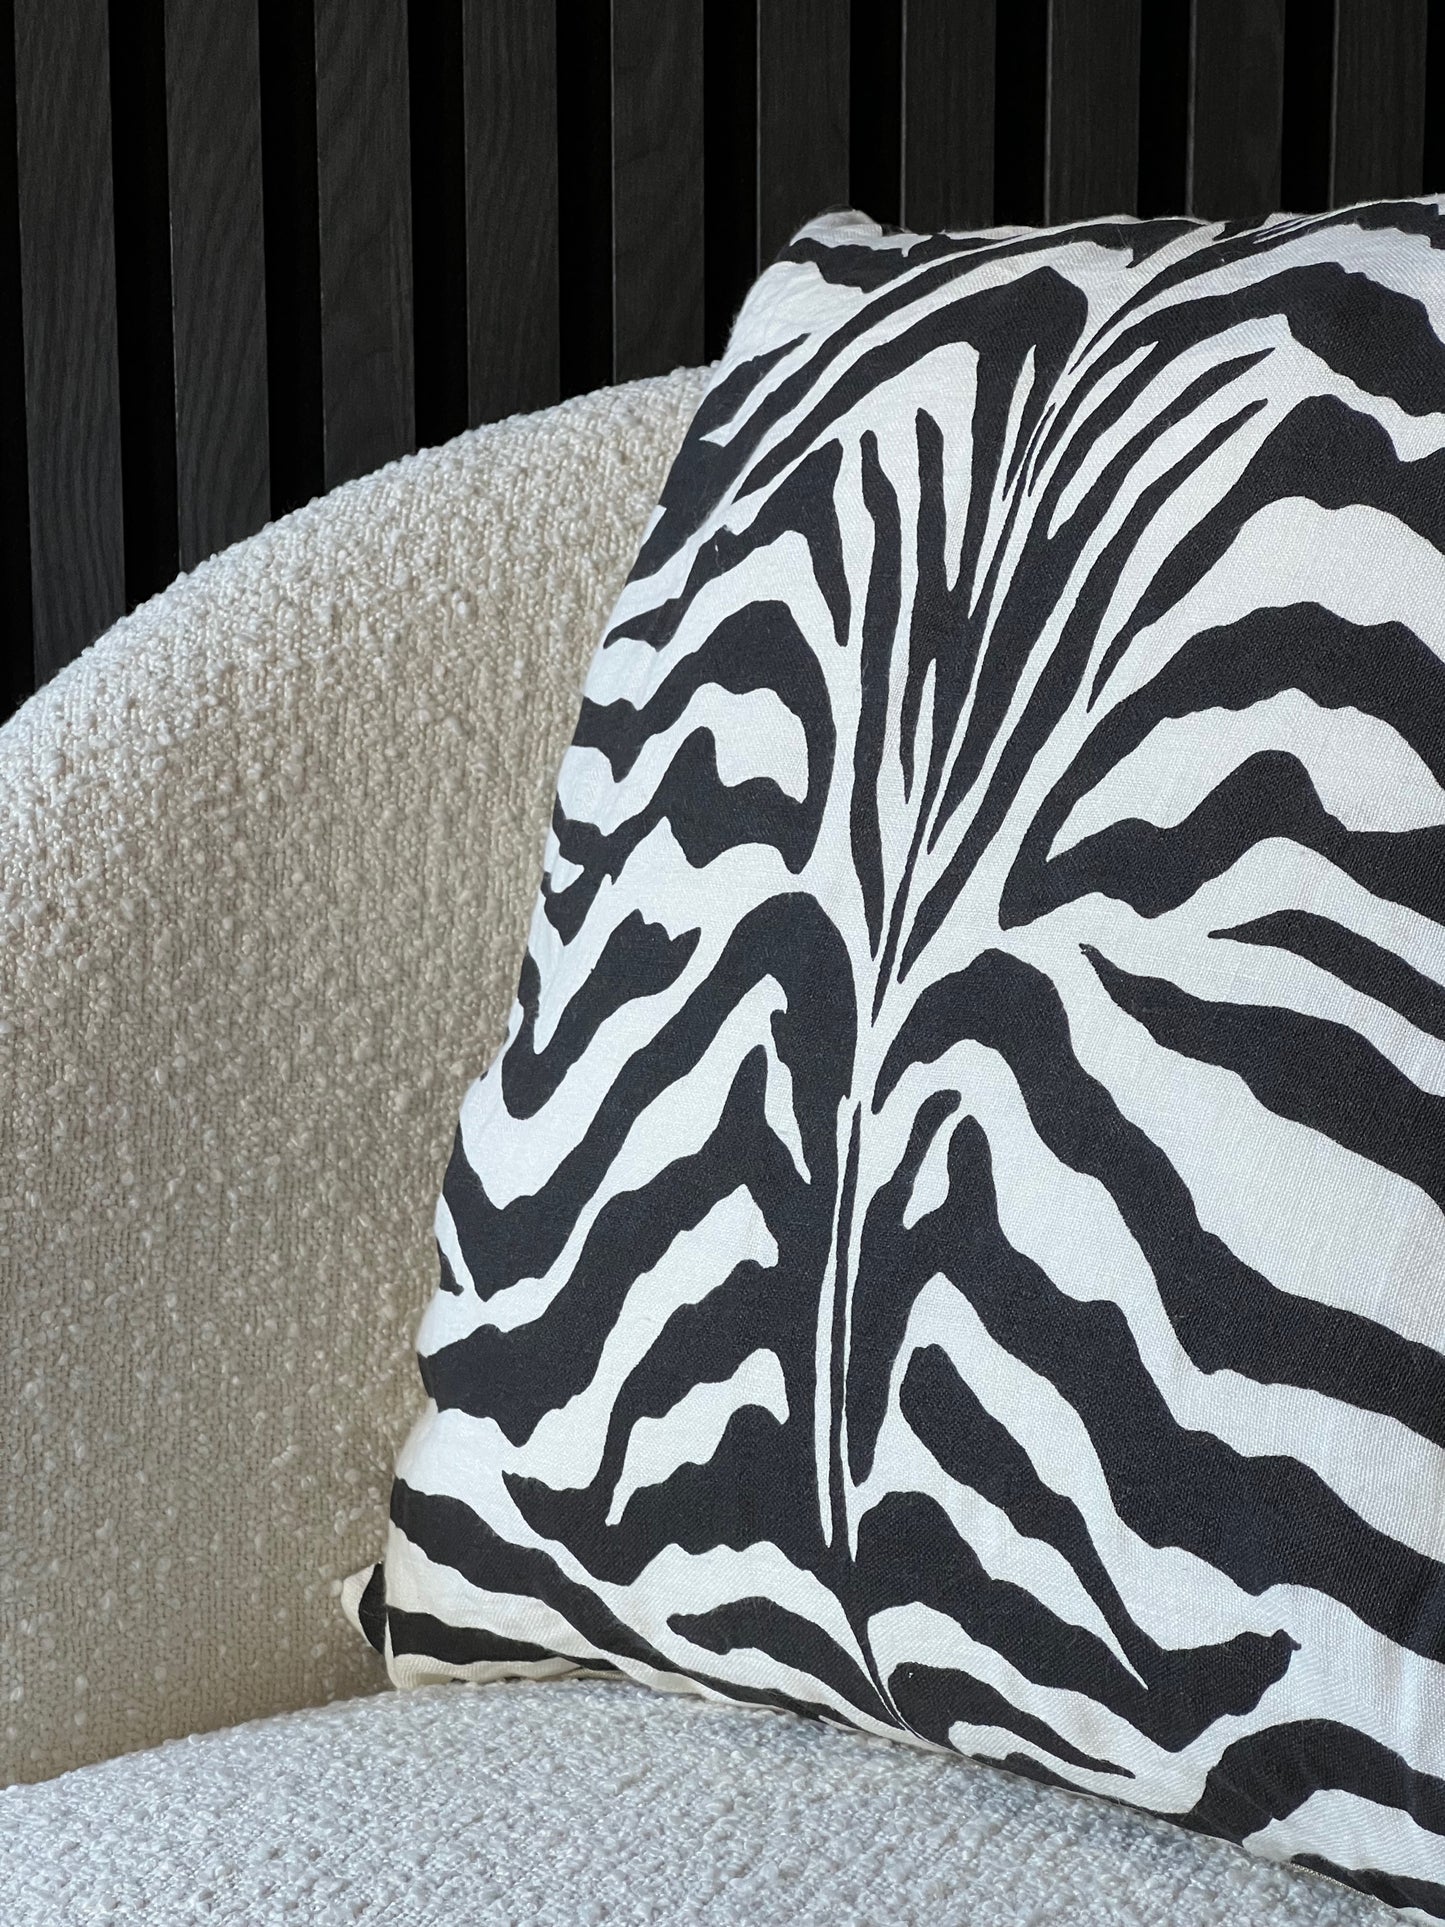 Zebra är ett snyggt kuddfodral från Day Home. Fodralet är sytt i en härlig blandning av 50% linne och 50% bomull med ett tryckt zebramönster. Hela kuddfodralet går i vitt och svart.